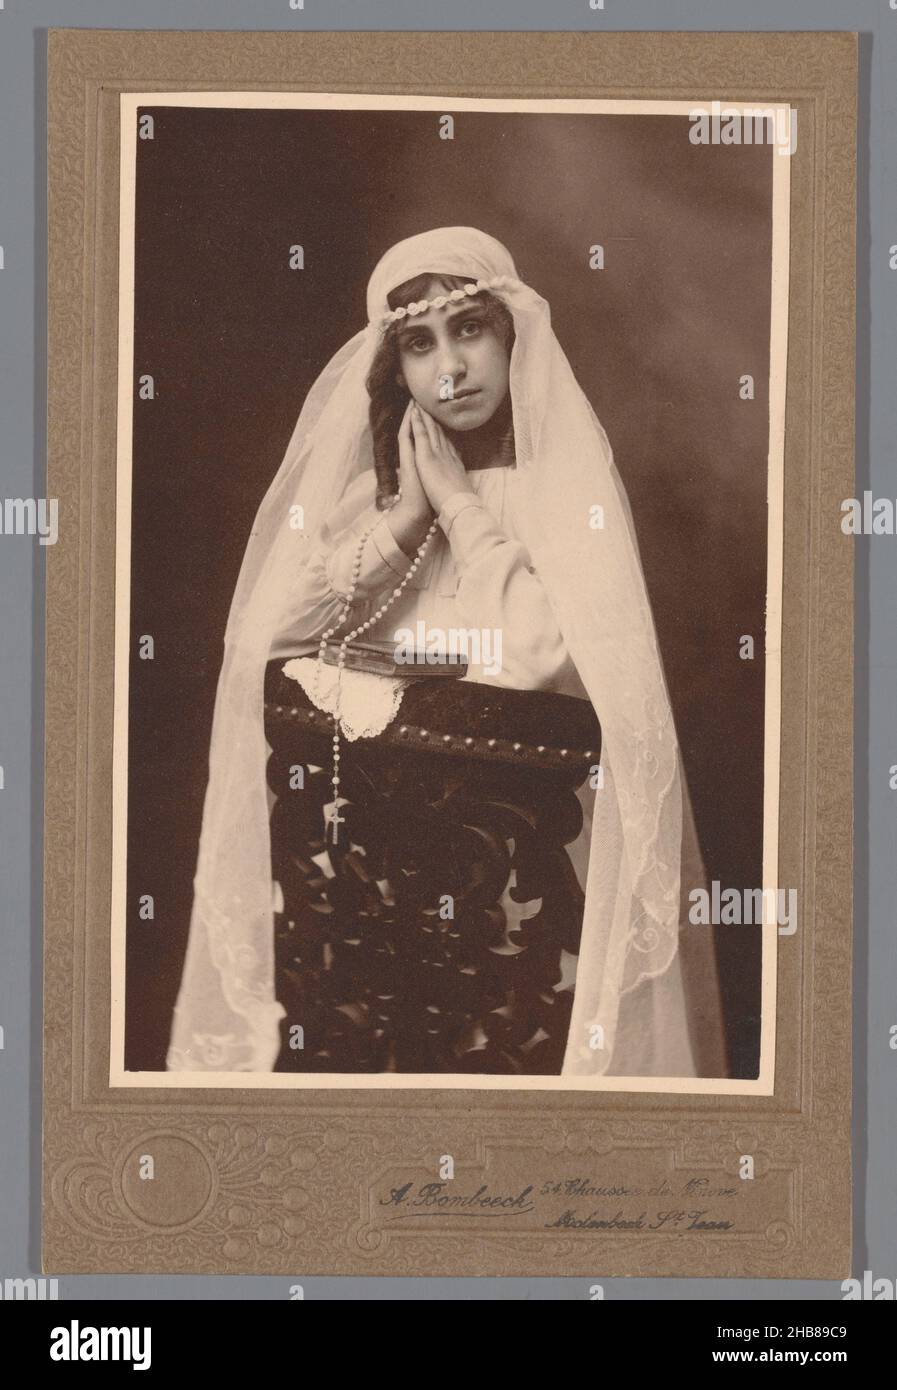 Portrait d'une jeune fille inconnue, probablement en tant que communicant, Adrien Bombeeck (mentionné sur l'objet), Bruxelles, c.1880 - c.1910, support photographique, carton, imprimé gélatine-argent, hauteur 137 mm × largeur 92 mm Banque D'Images